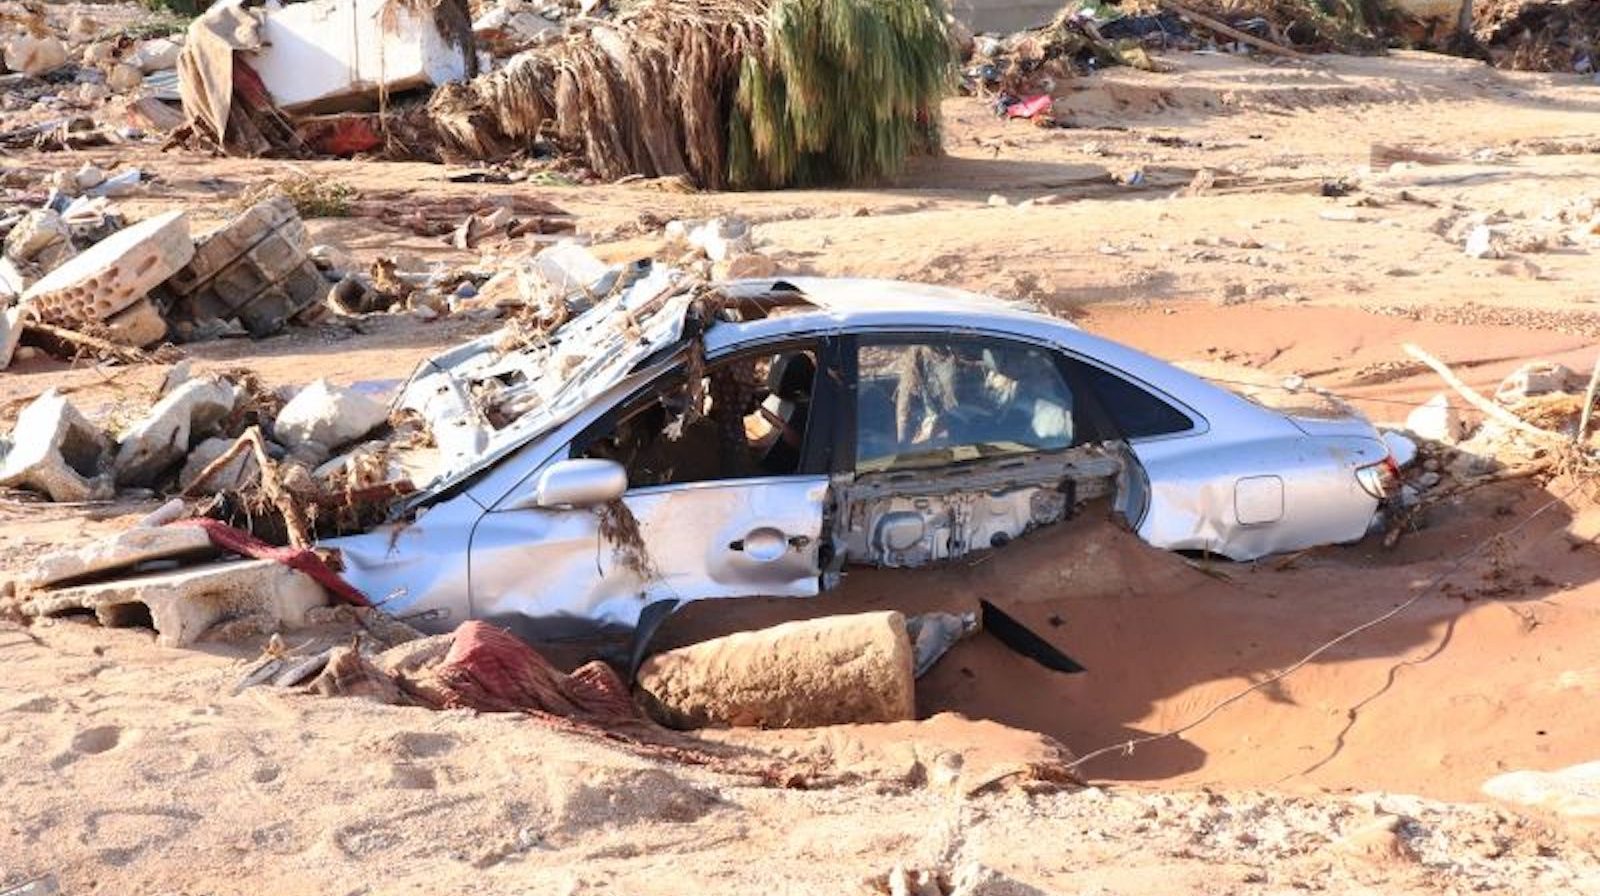 Inundaciones Libia